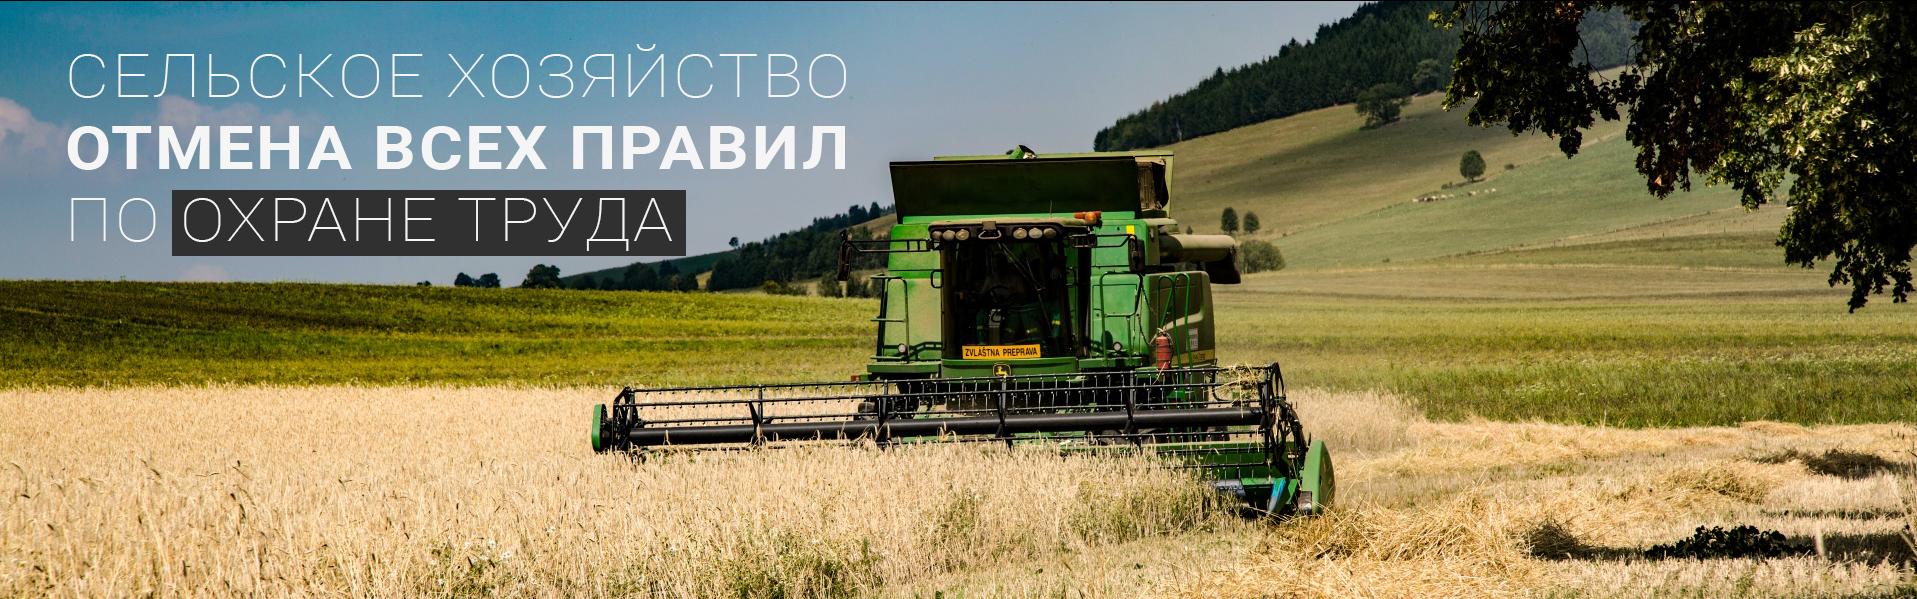 Минтруд России утвердил Правила по охране труда в сельском хозяйстве.